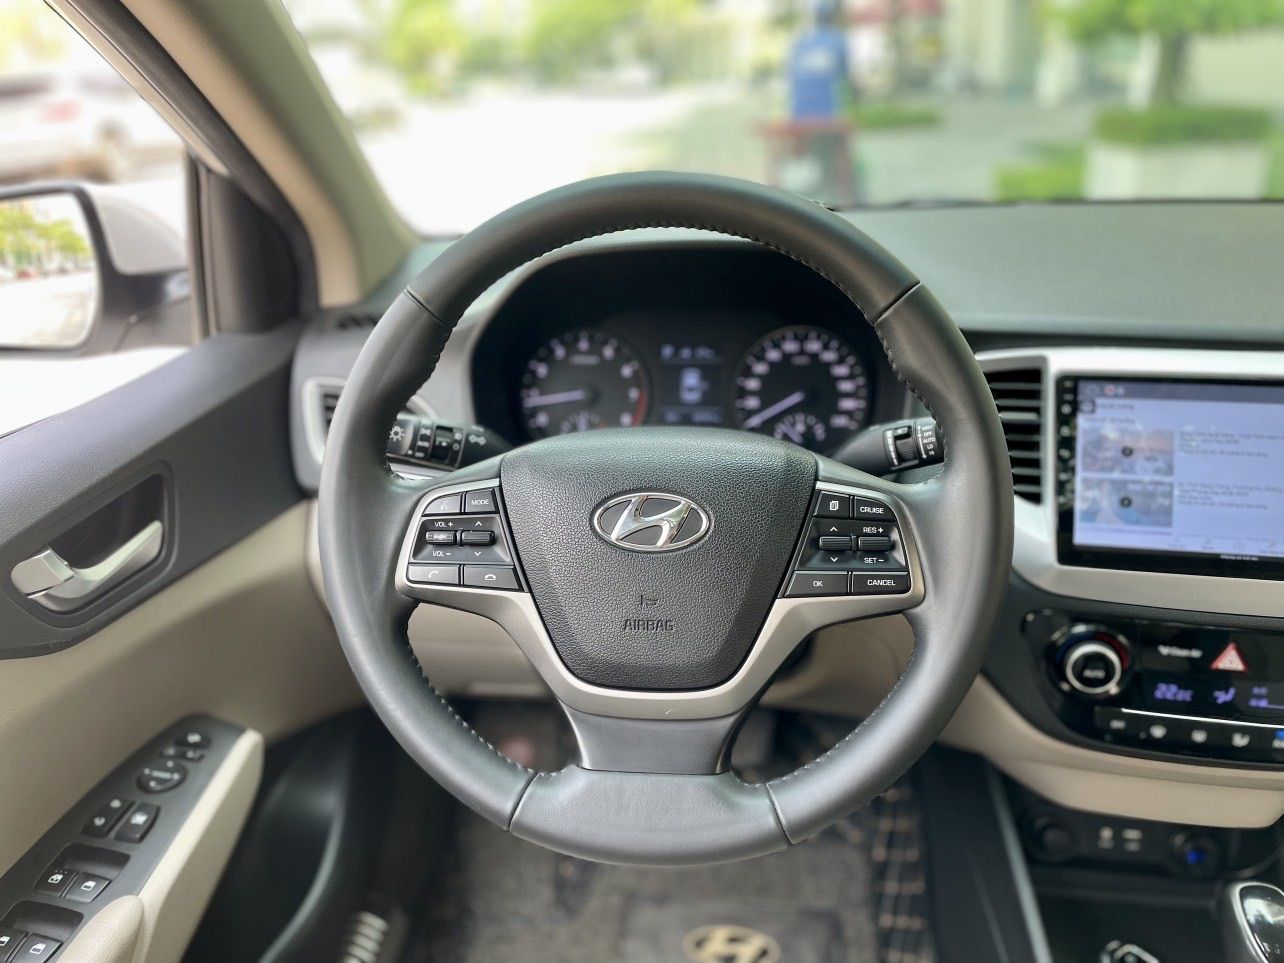 Hyundai Accent 2019 - Màu trắng, biển Hà Nội, chạy chuẩn 3,5v. Đẹp không lỗi nhỏ